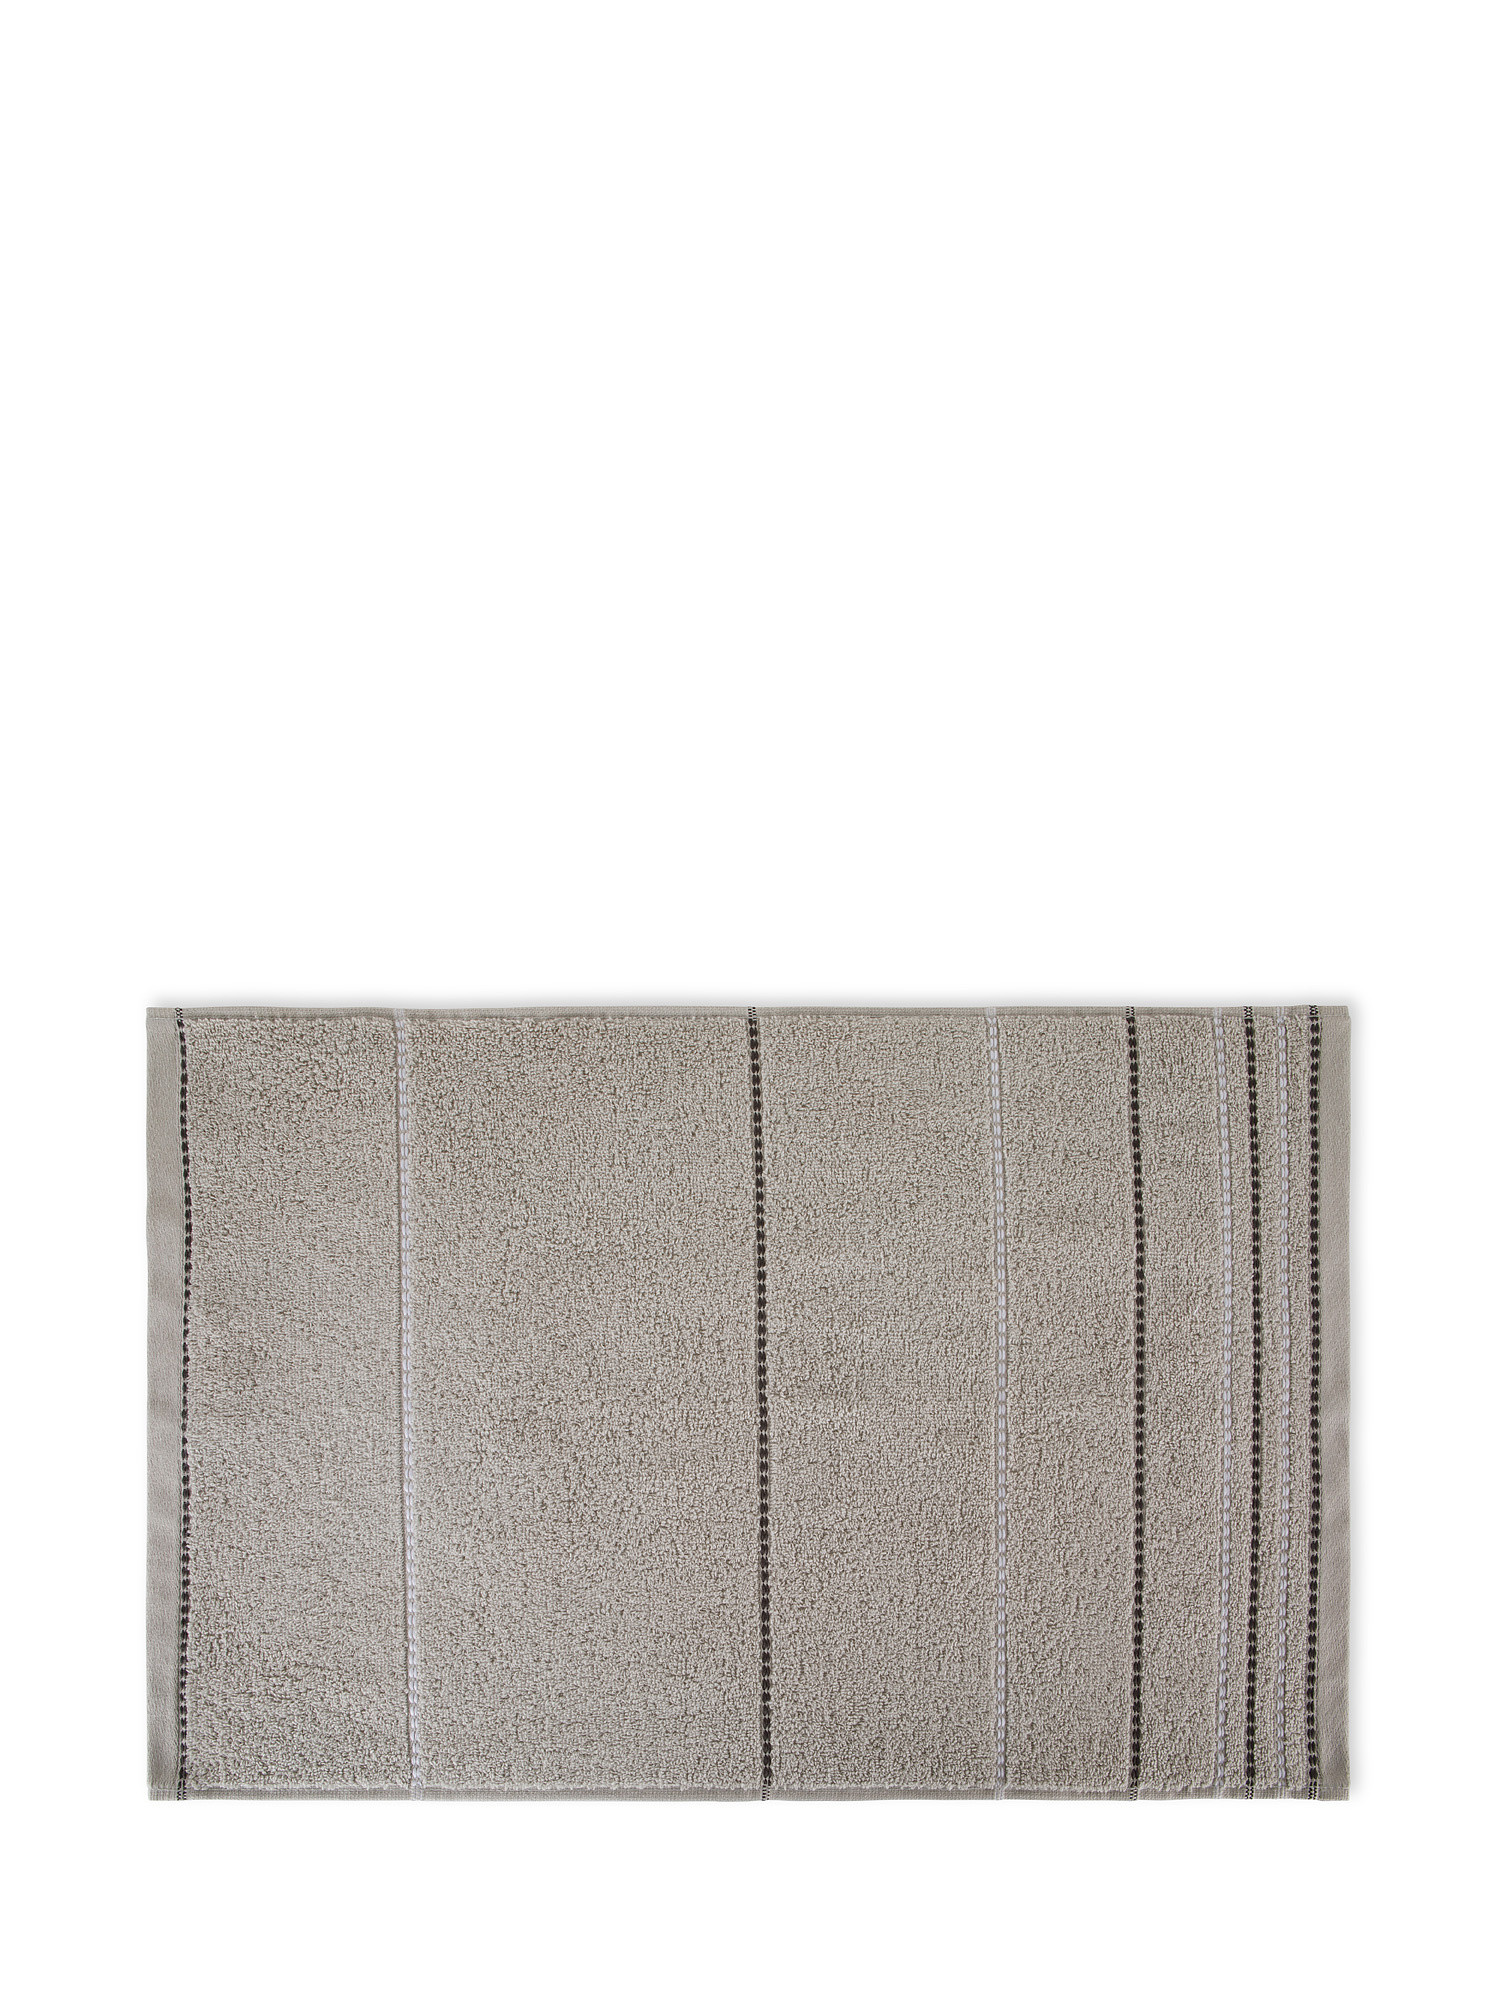 Set 3 asciugamani spugna di cotone a righe, Grigio, large